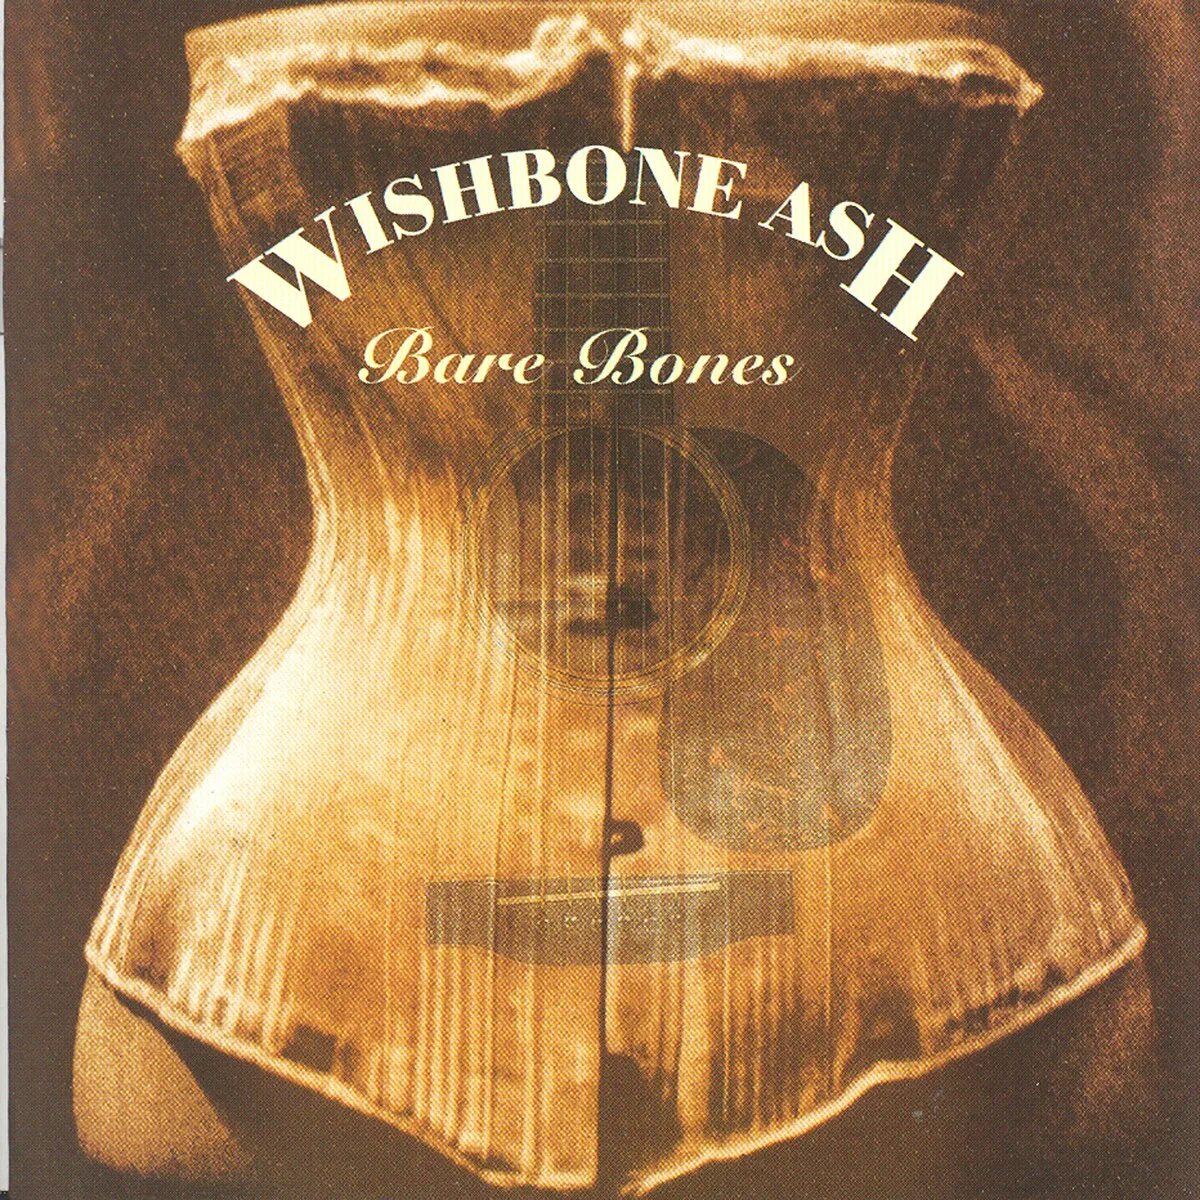 Bare bones 1.20 4. Wishbone Ash bare Bones 1999. Wishbone Ash - bare Bones. Wishbone Ash Bona Fide 2002. CD Wishbone Ash: bare Bones.